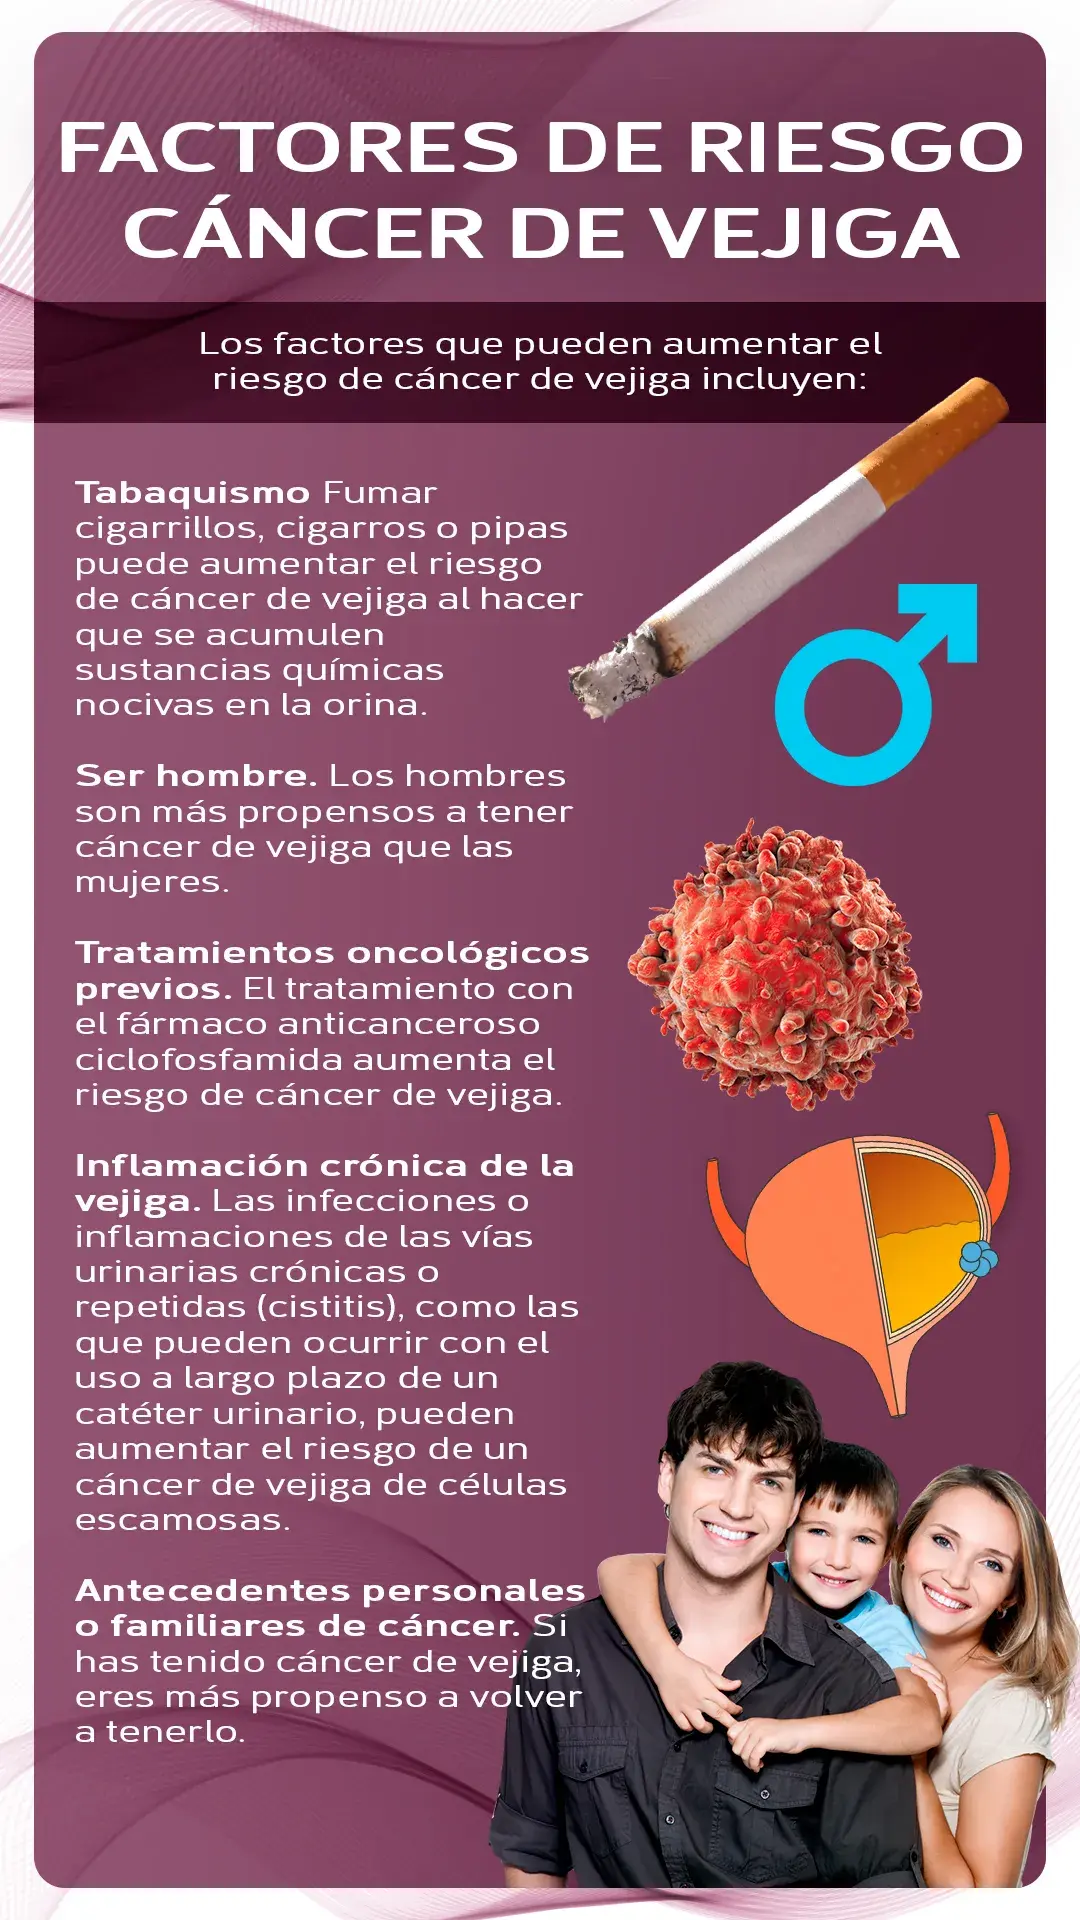 Factores de riesgo del cáncer de vejiga (tabaquismo, ser hombre, tratamientos oncológicos, inflamación crónica de la vejiga, antecedentes familiares)